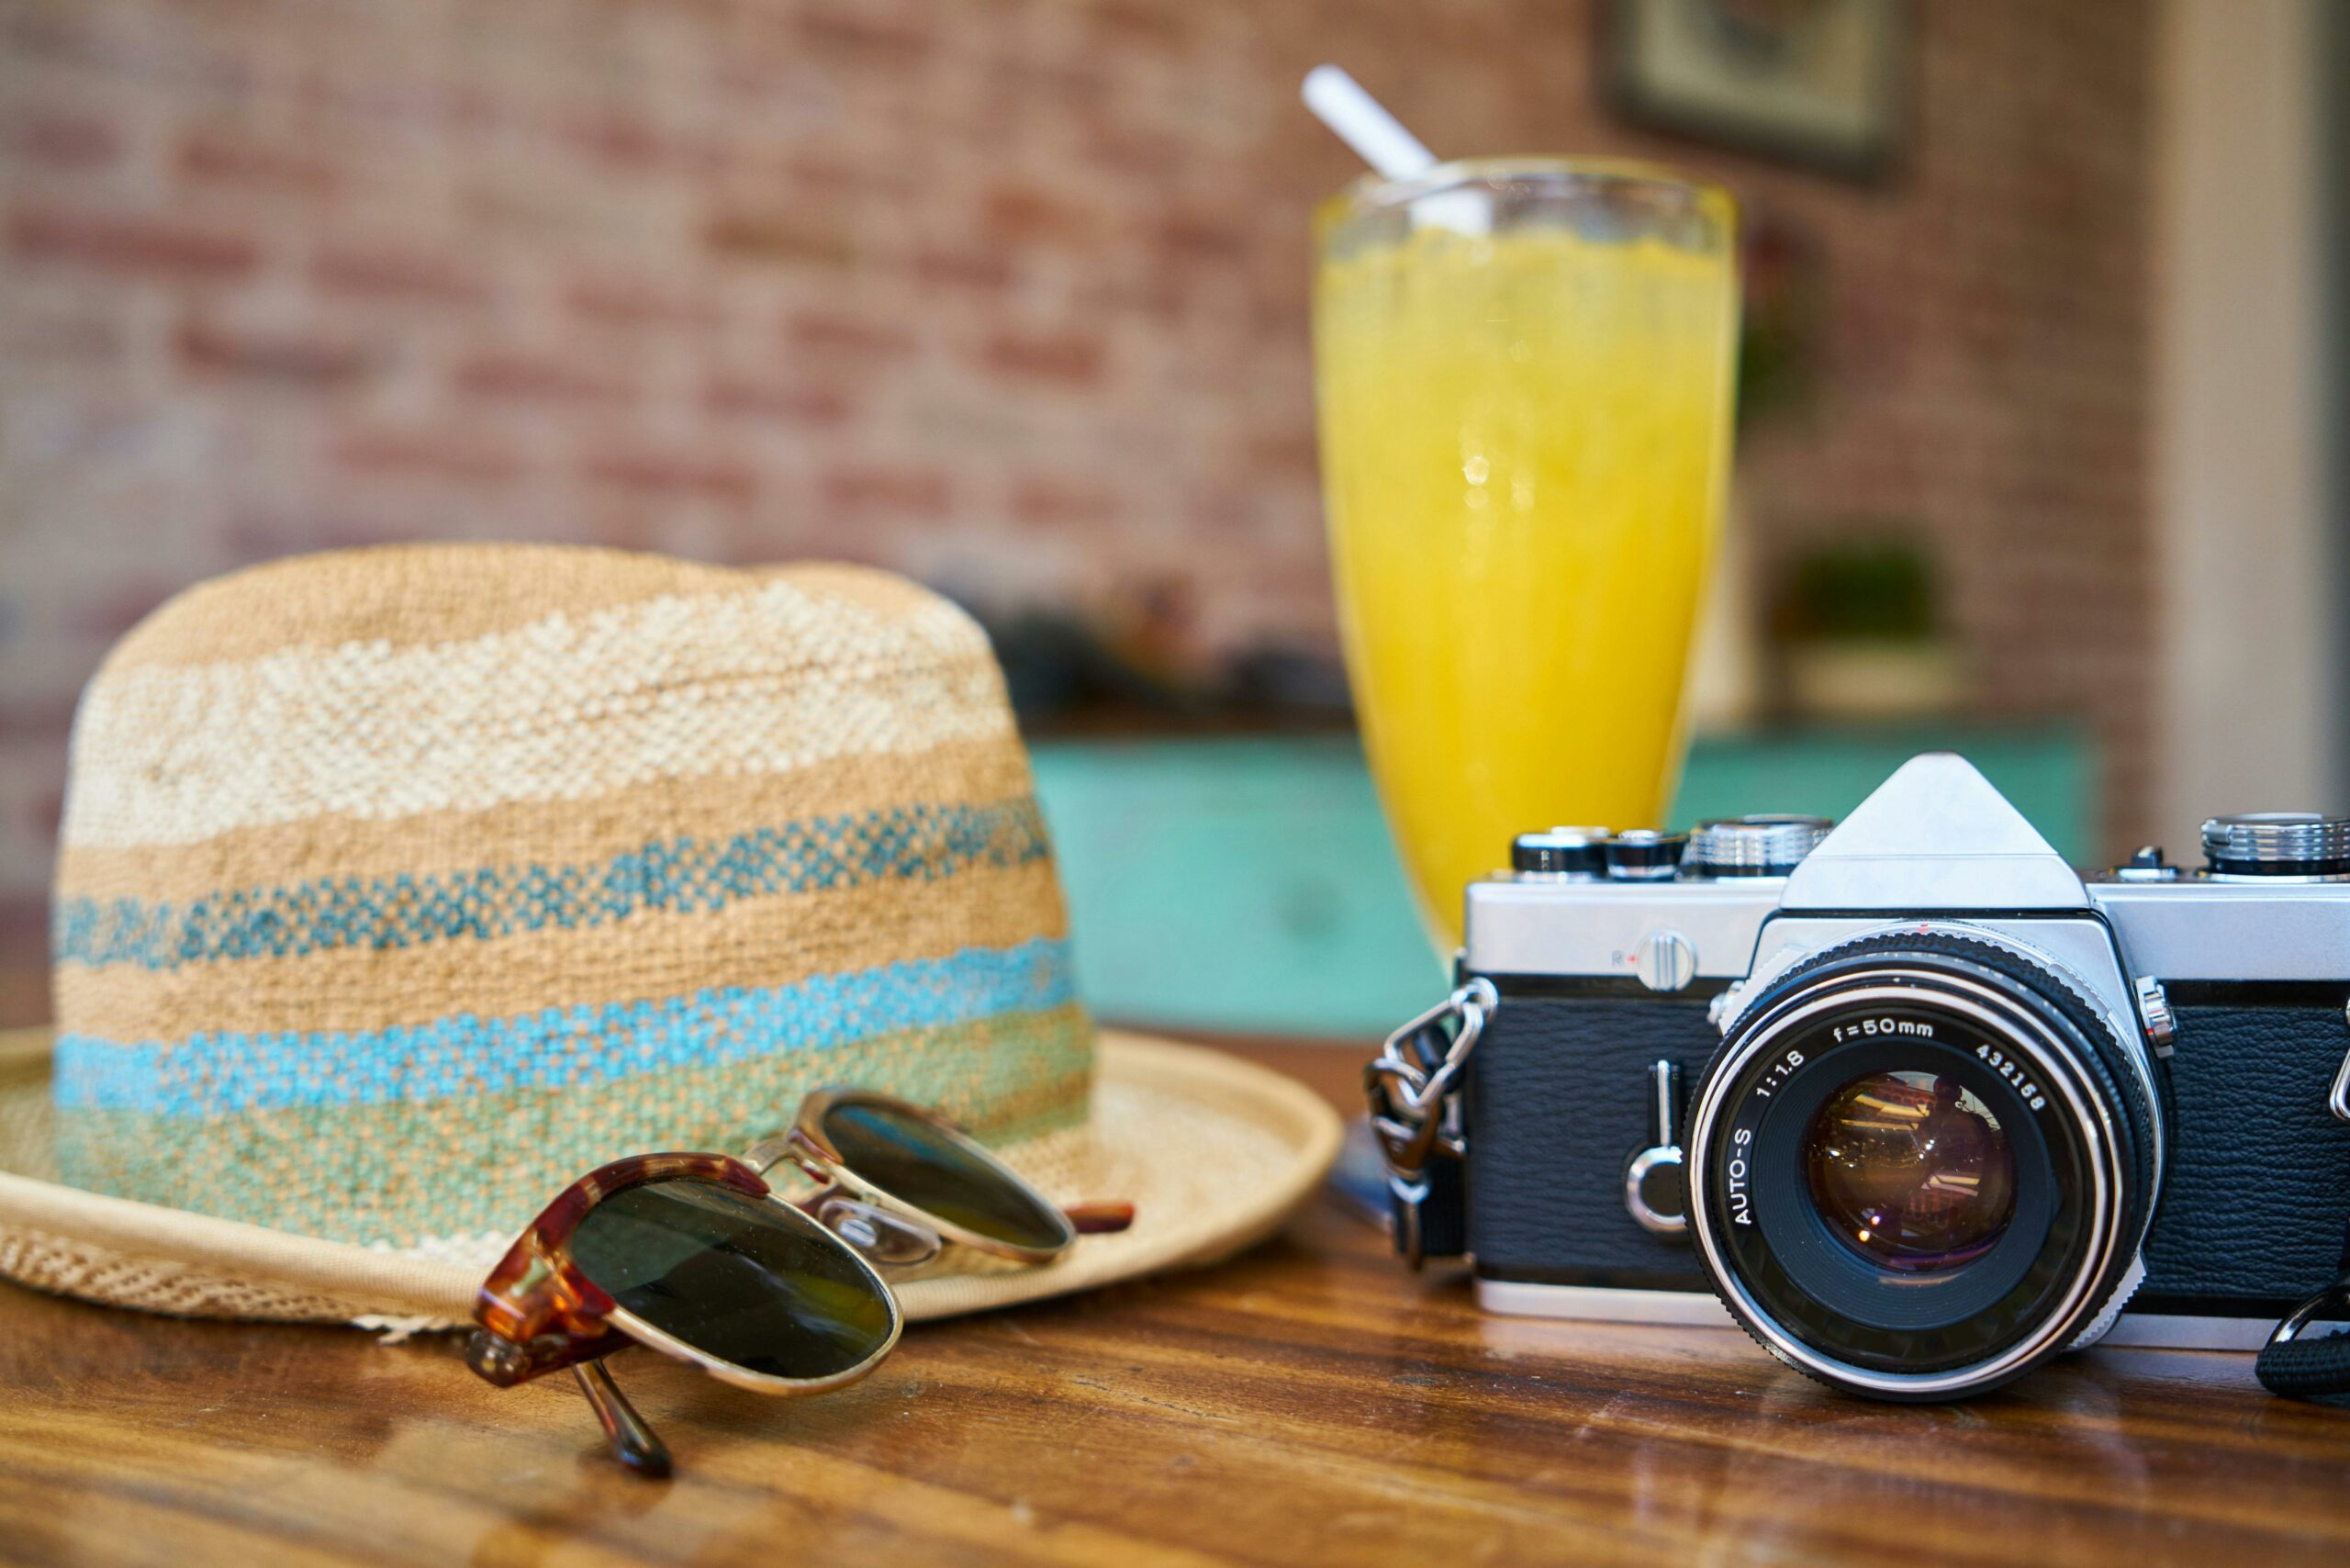 Une table avec un appareil photo vintage, des lunettes de soleil, un chapeau et un verre de boisson fraîche, évoquant une atmosphère de voyage et d'aventure.